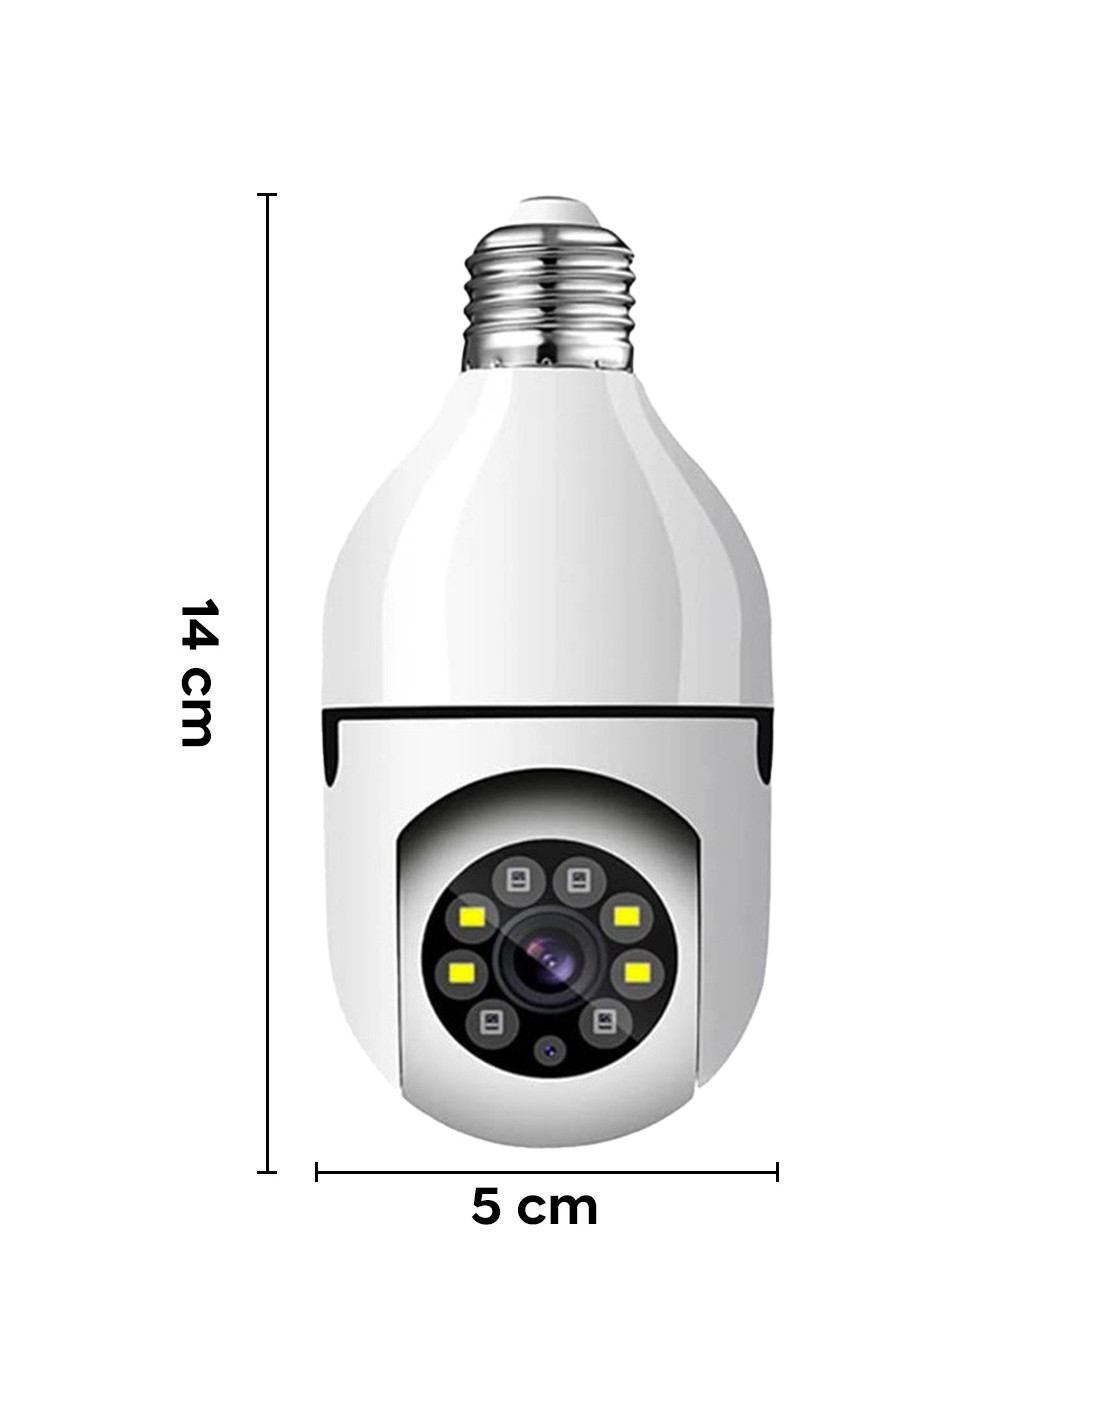 Telecamere nascoste in lampade d esterno - Microspia